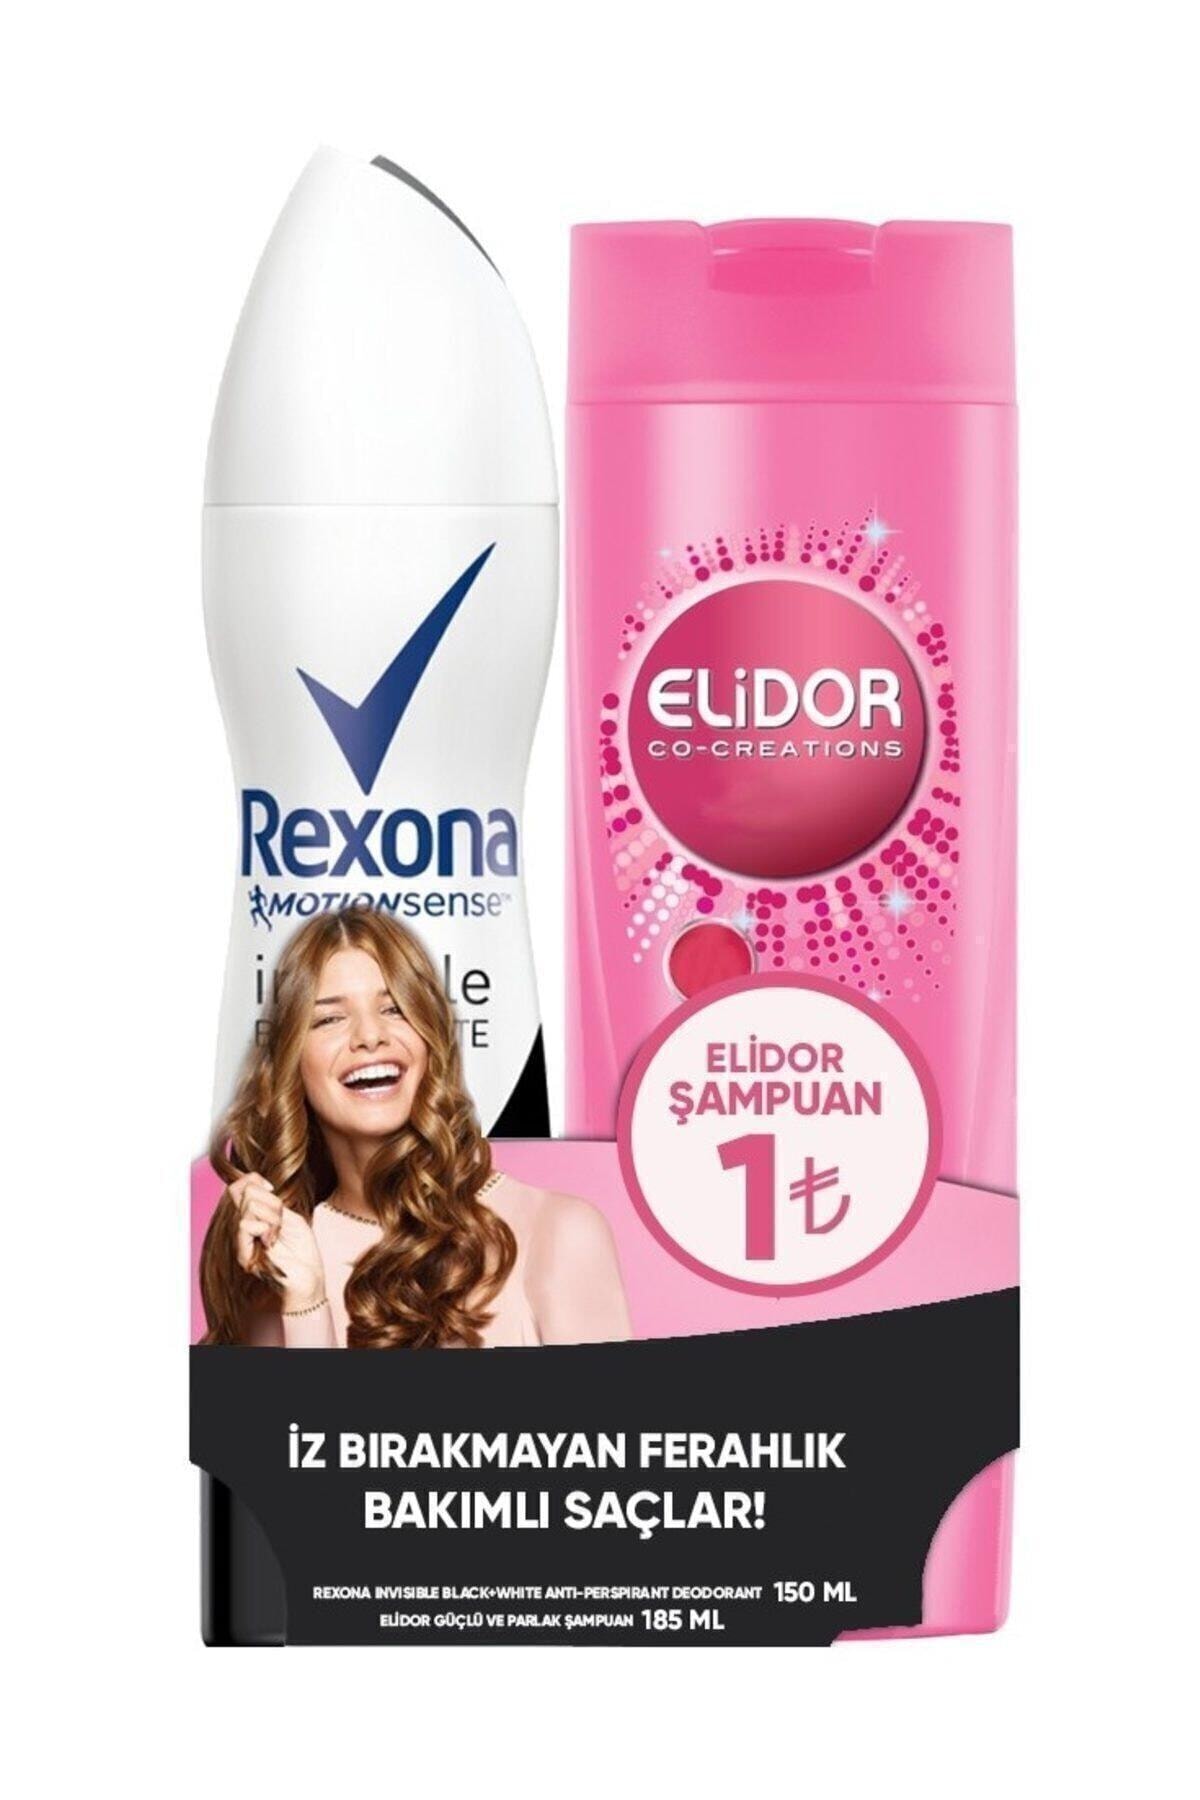 Rexona Shower Fresh Anti-perspirant Deodorant 150ml / Elidor Güçlü Ve Parlak 185ml